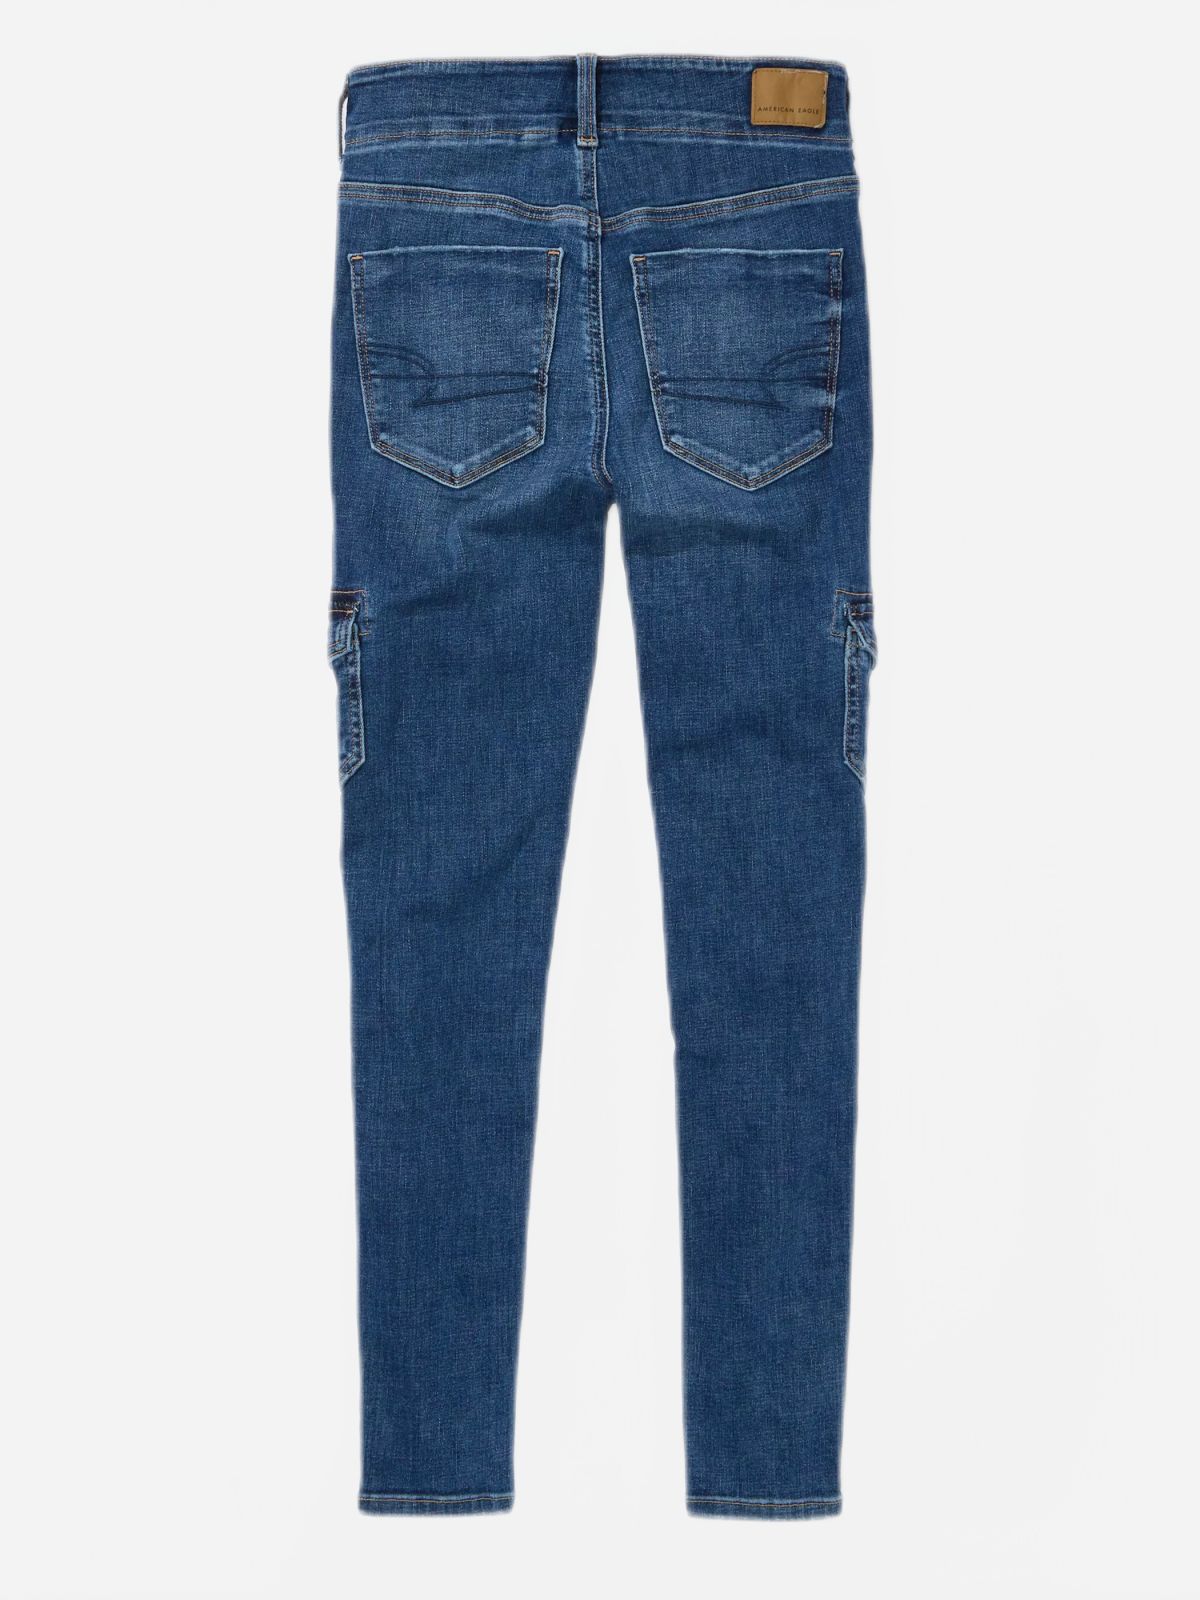  ג'ינס סקיני בגזרה גבוהה של AMERICAN EAGLE